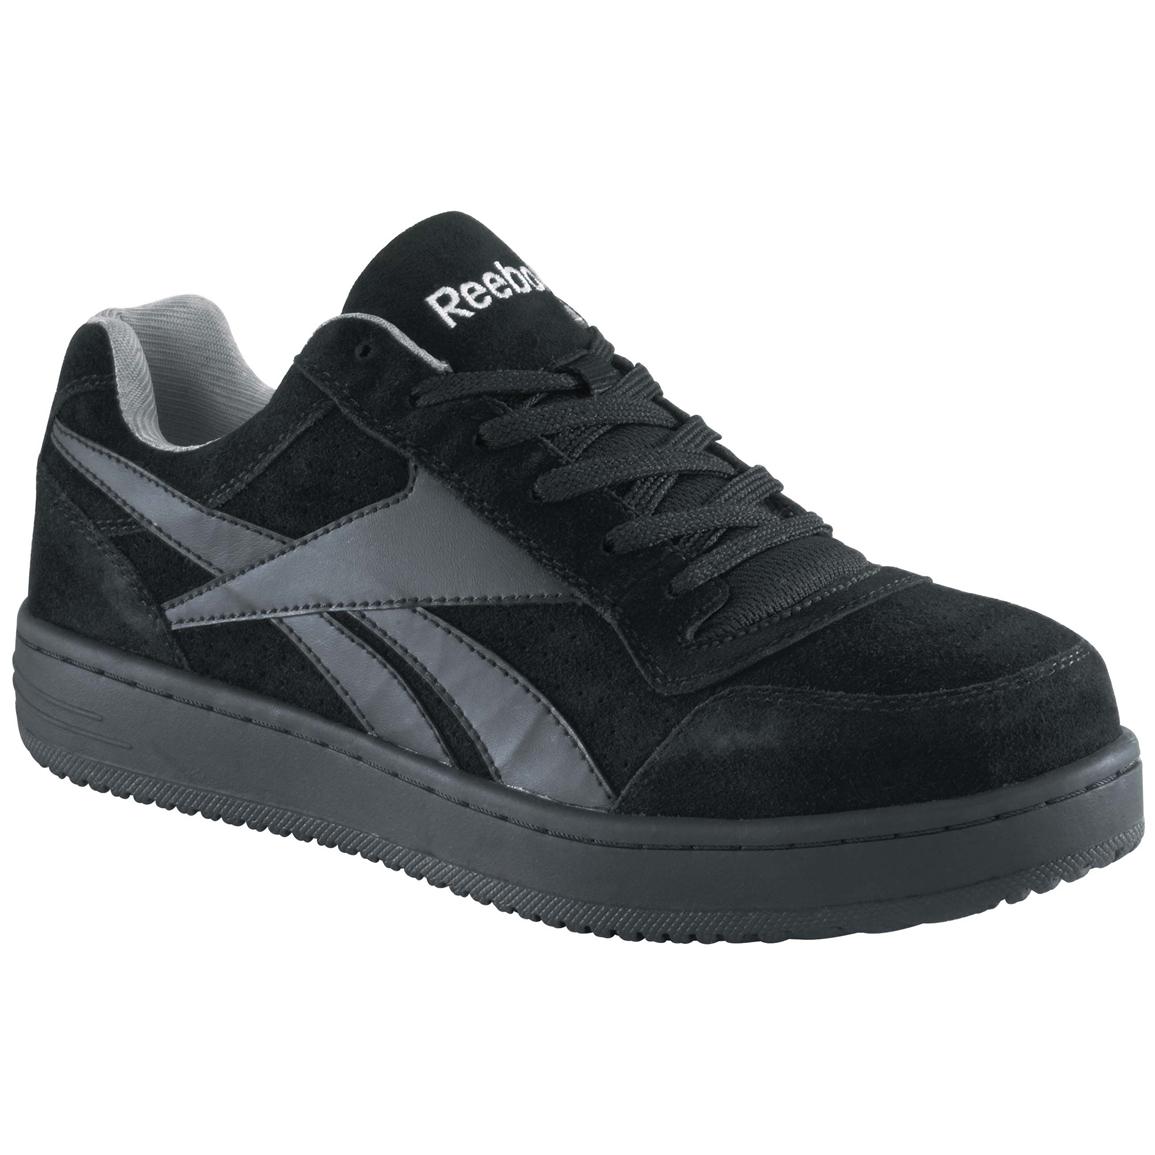 steel toe sneakers womenu0027s reebok® steel toe classic shoes, black JVUGLAV